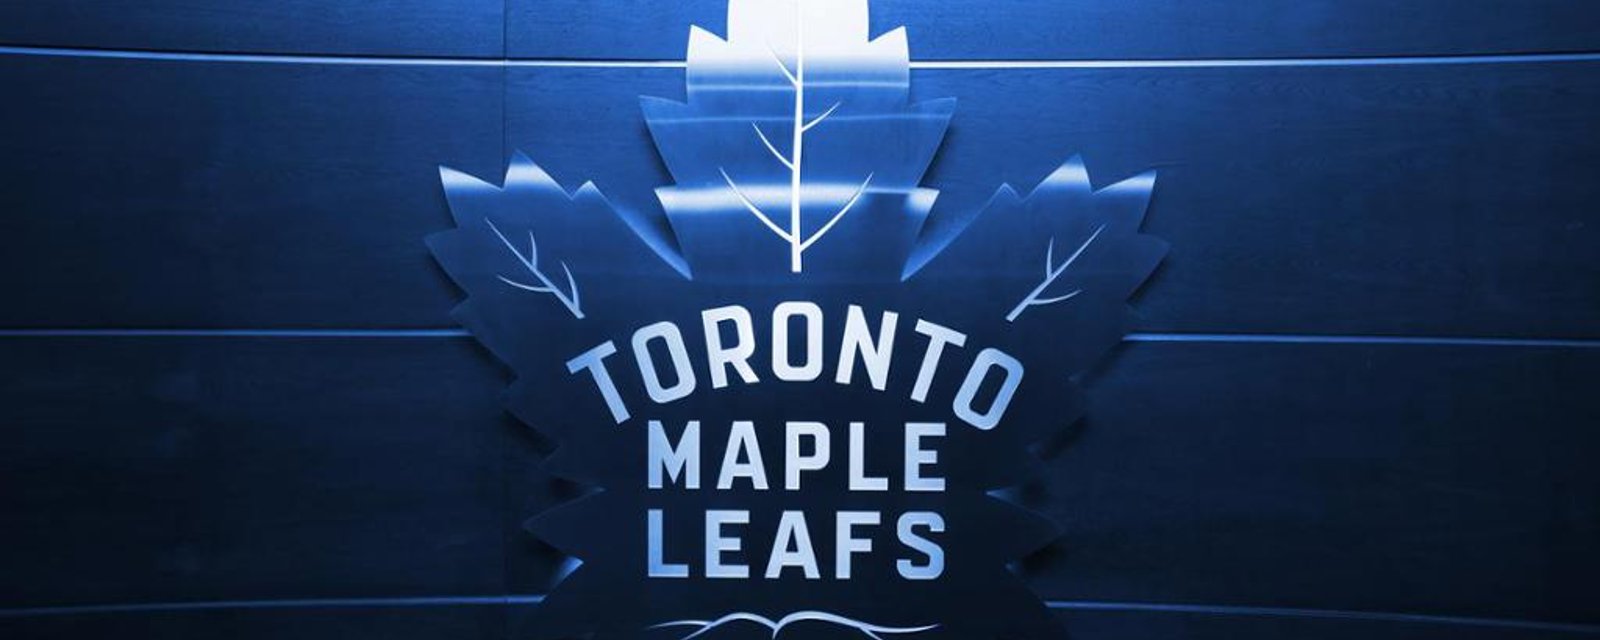 Les Maple Leafs font l'acquisition d'un géant